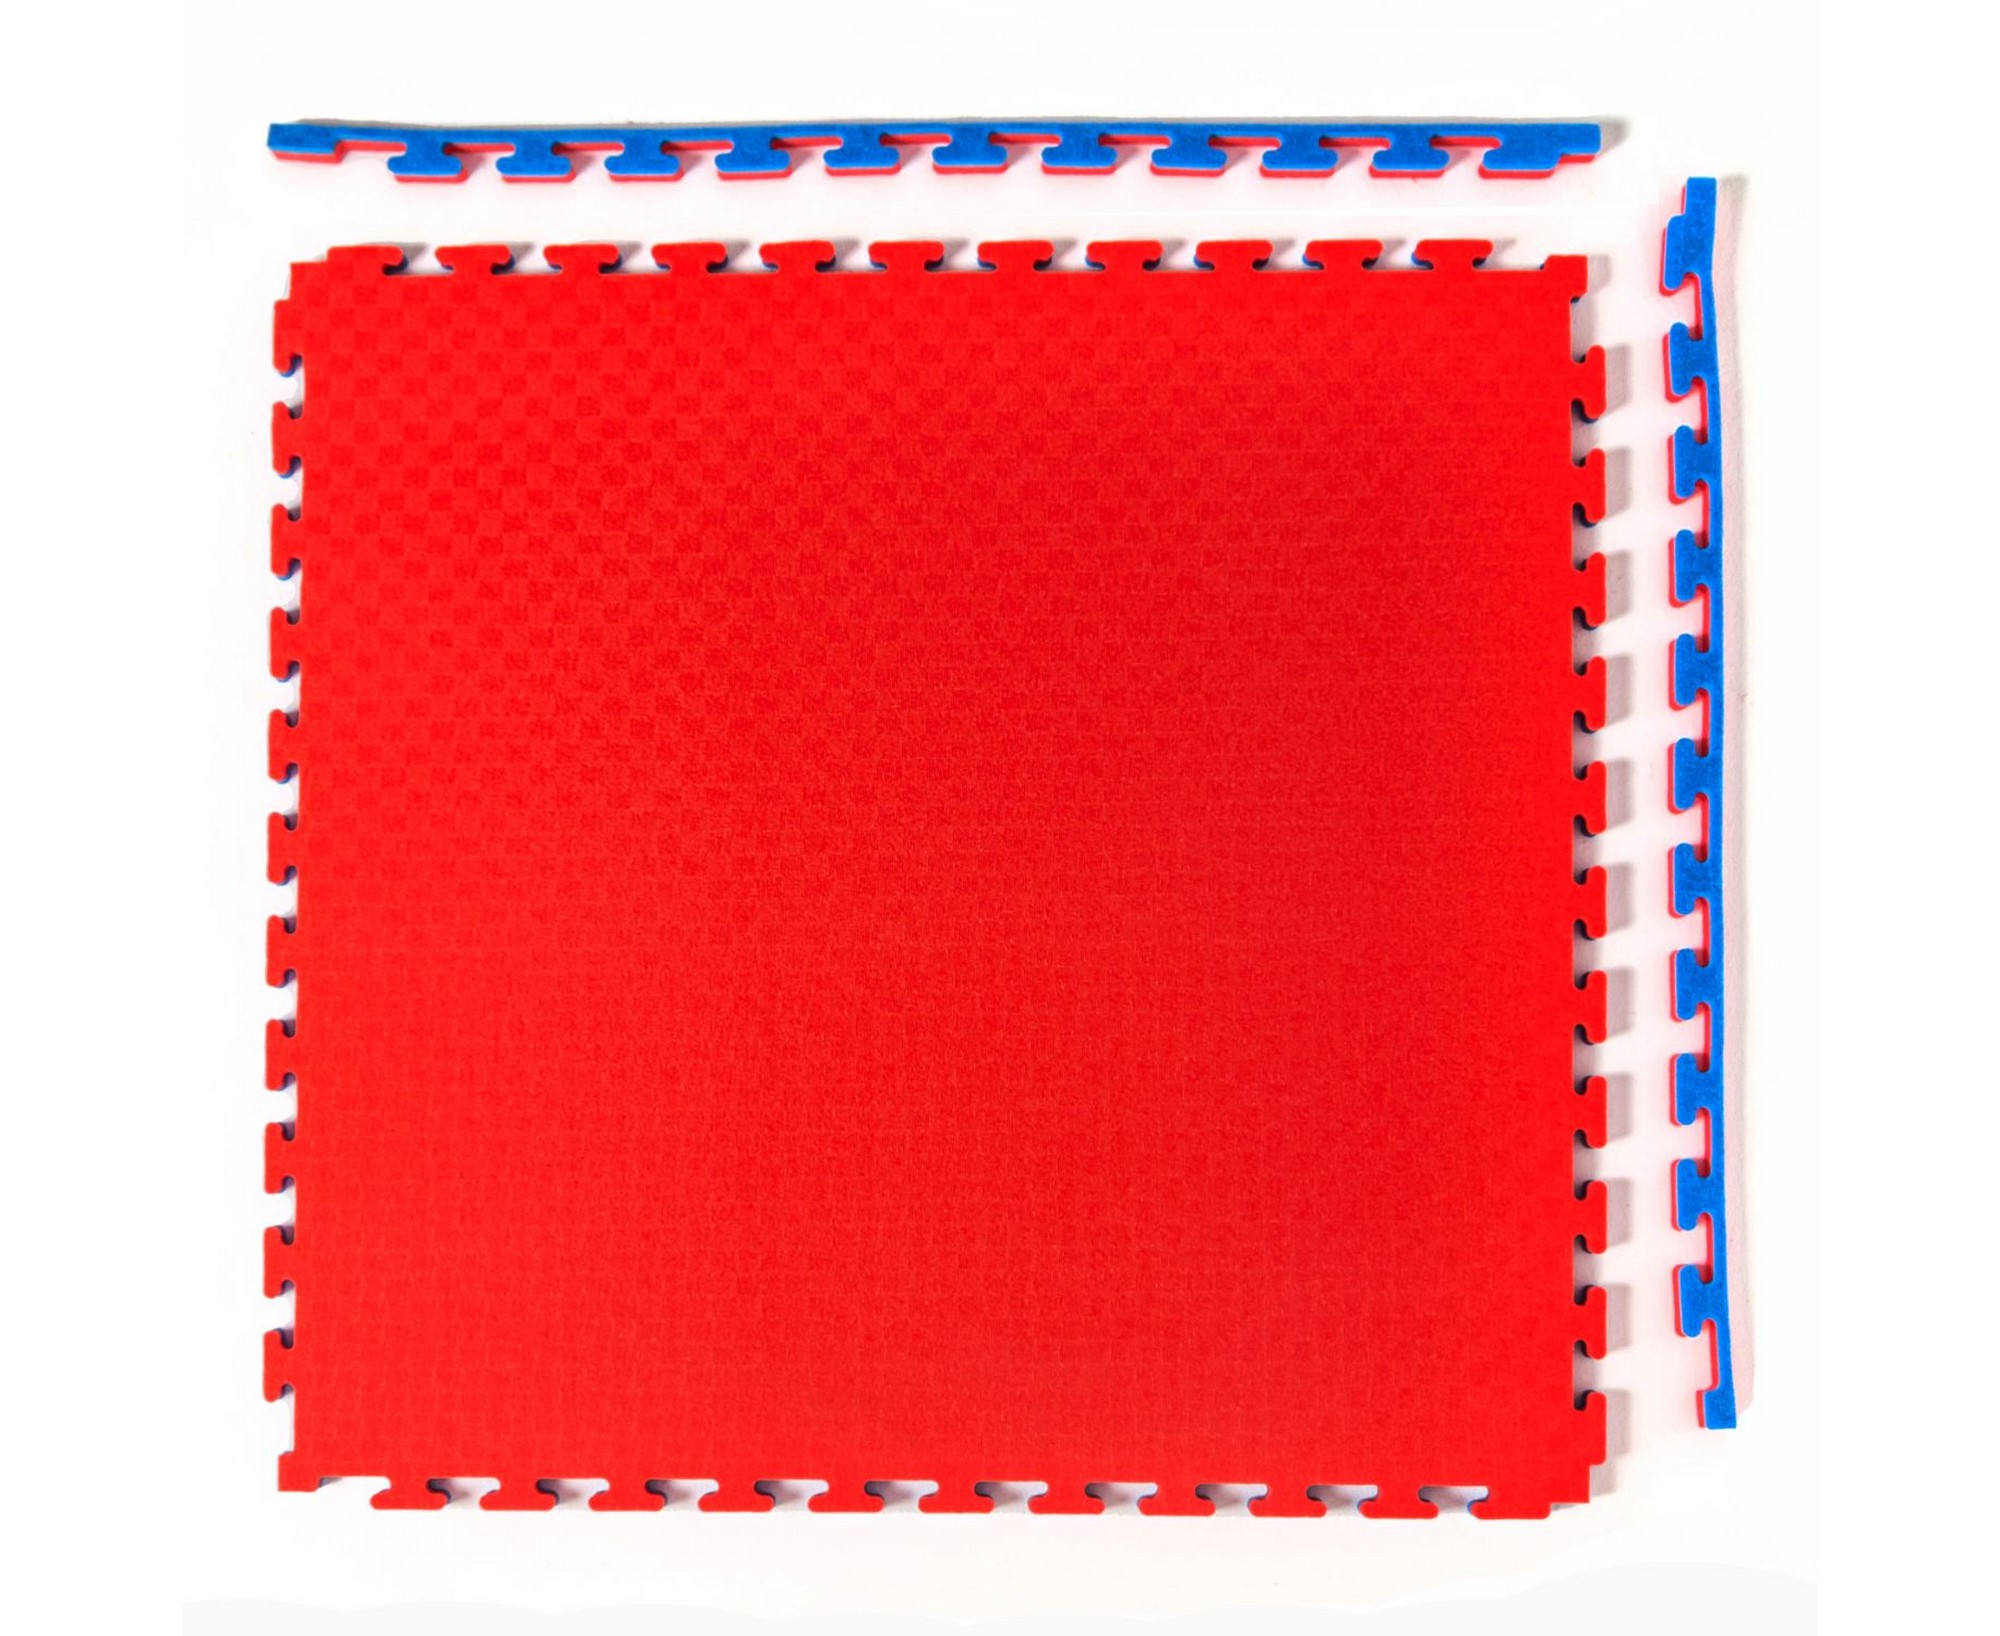 Будо-мат, 100x100 см, 20 мм DFC 12272 сине-красный 2000_1636